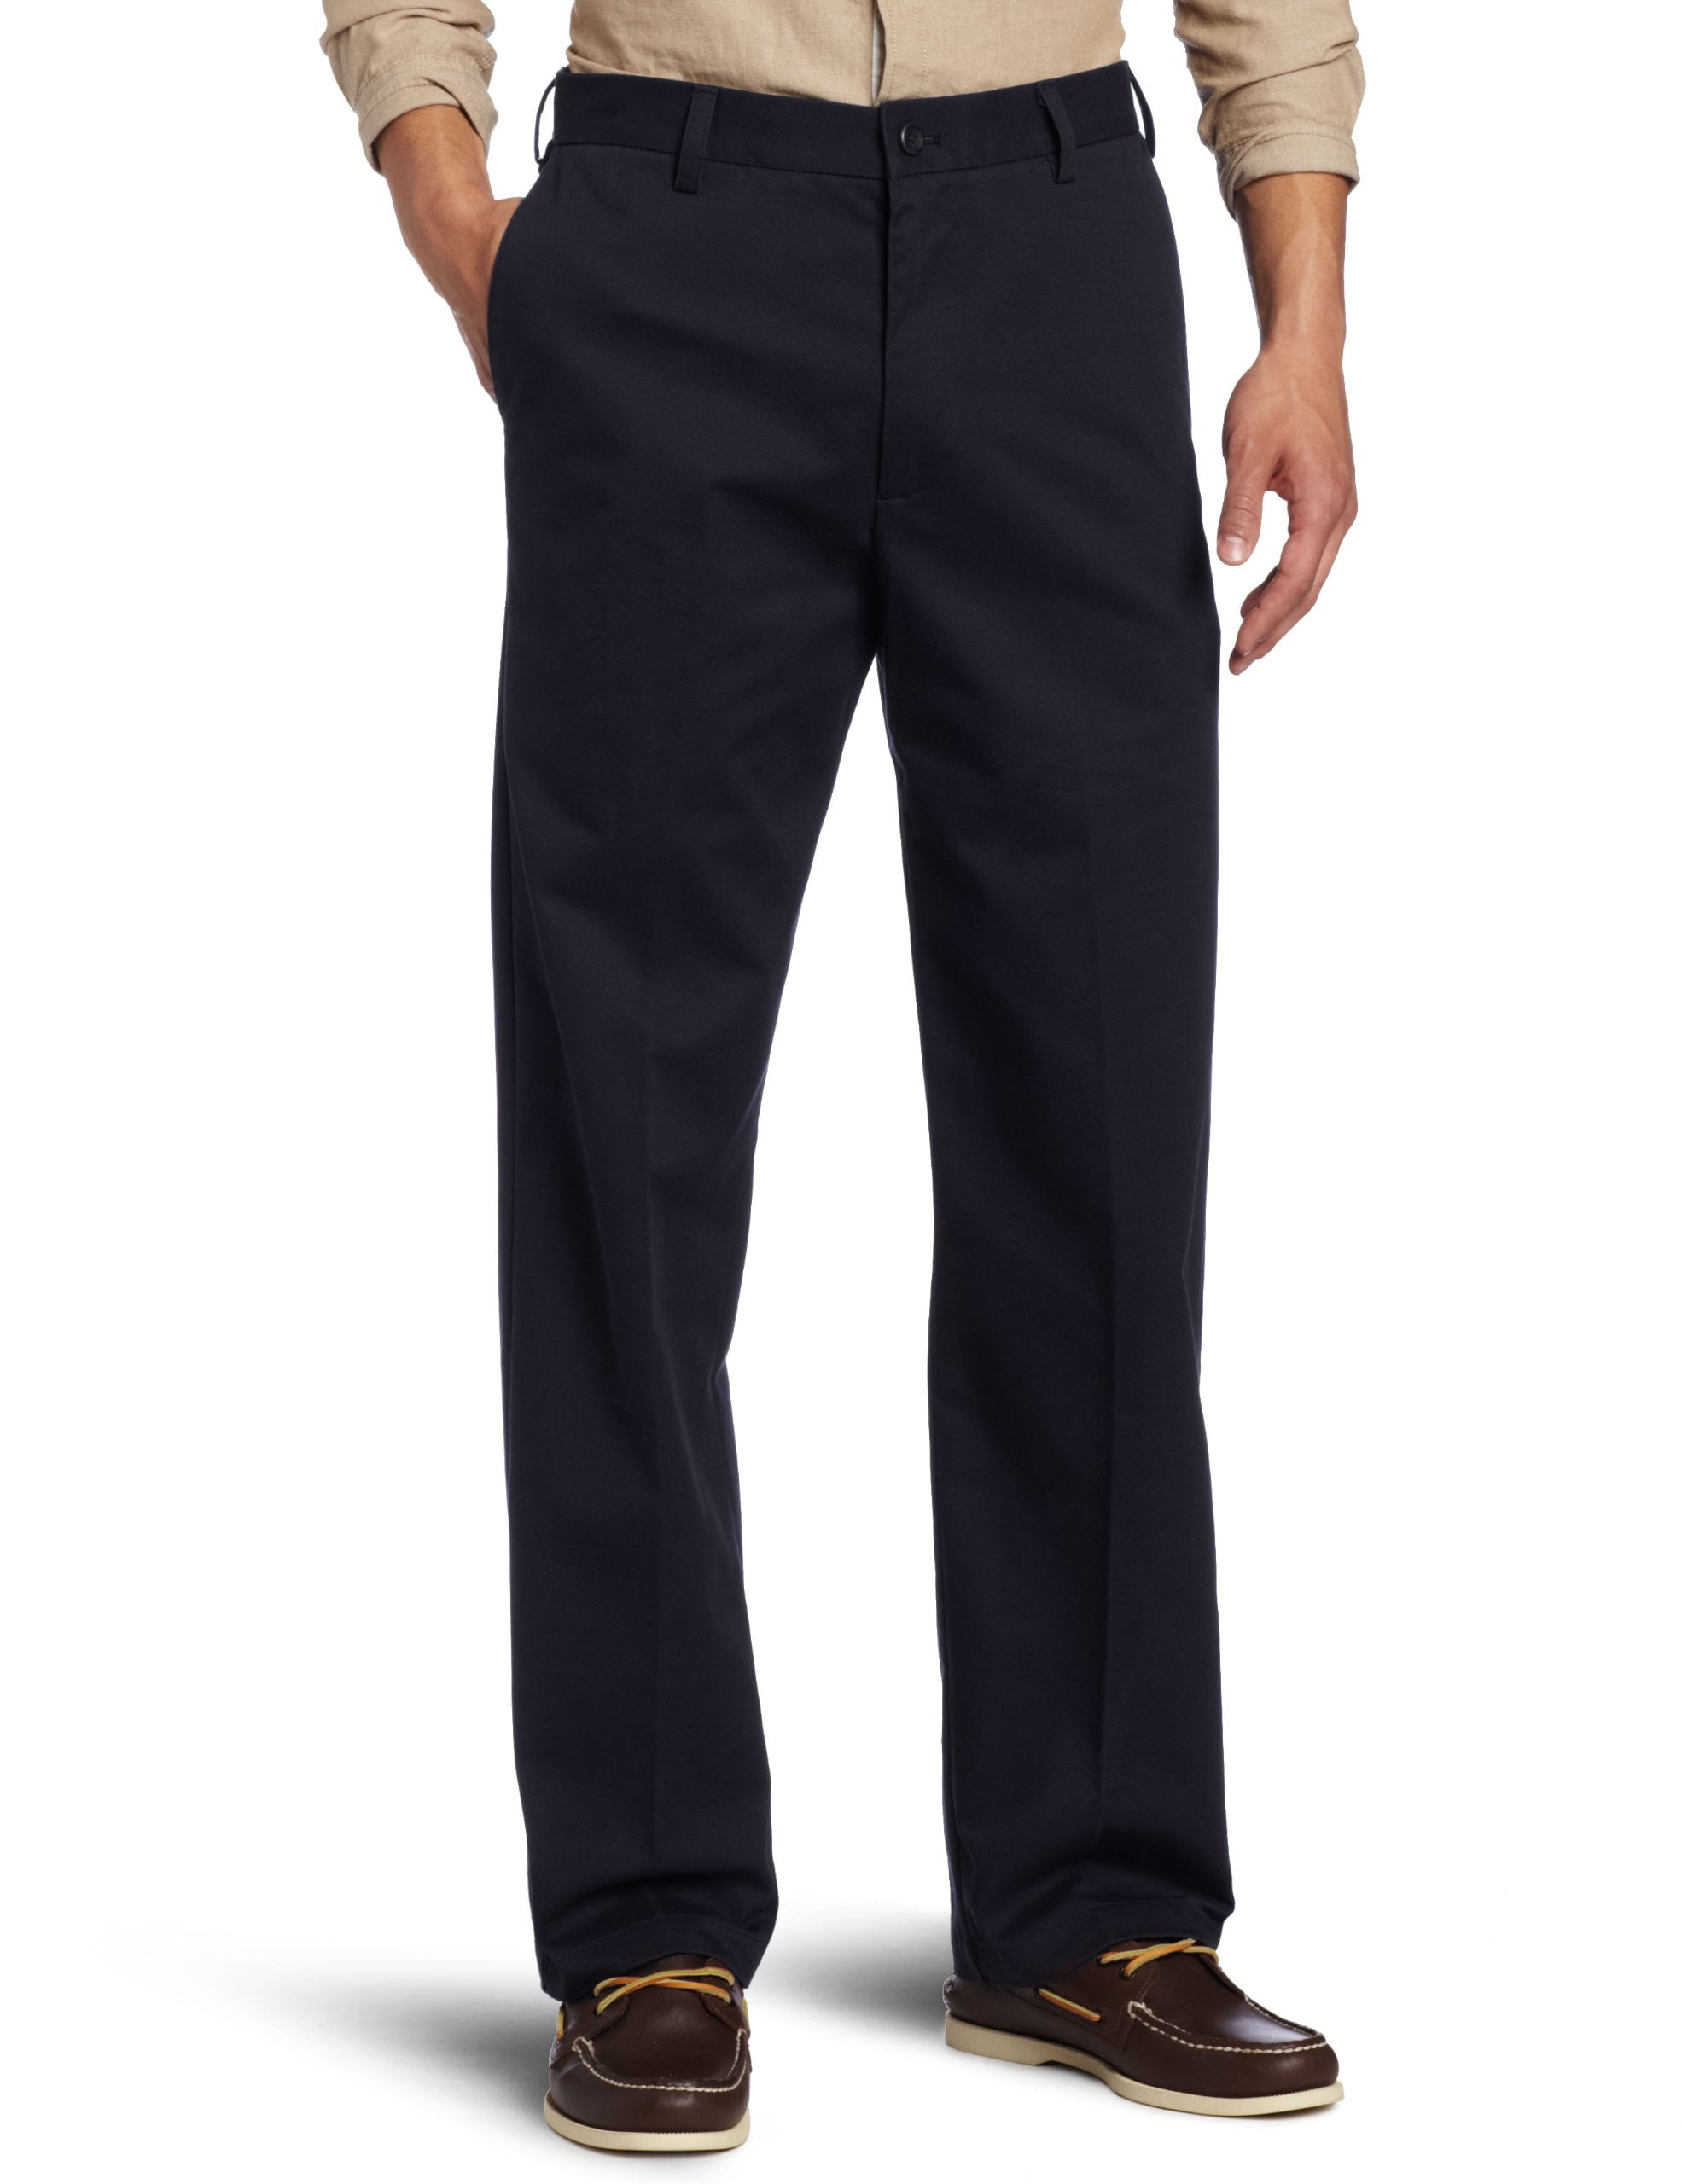 IZOD Mens 36x34 Straight Leg Flat Front Dress Pants - Walmart.com